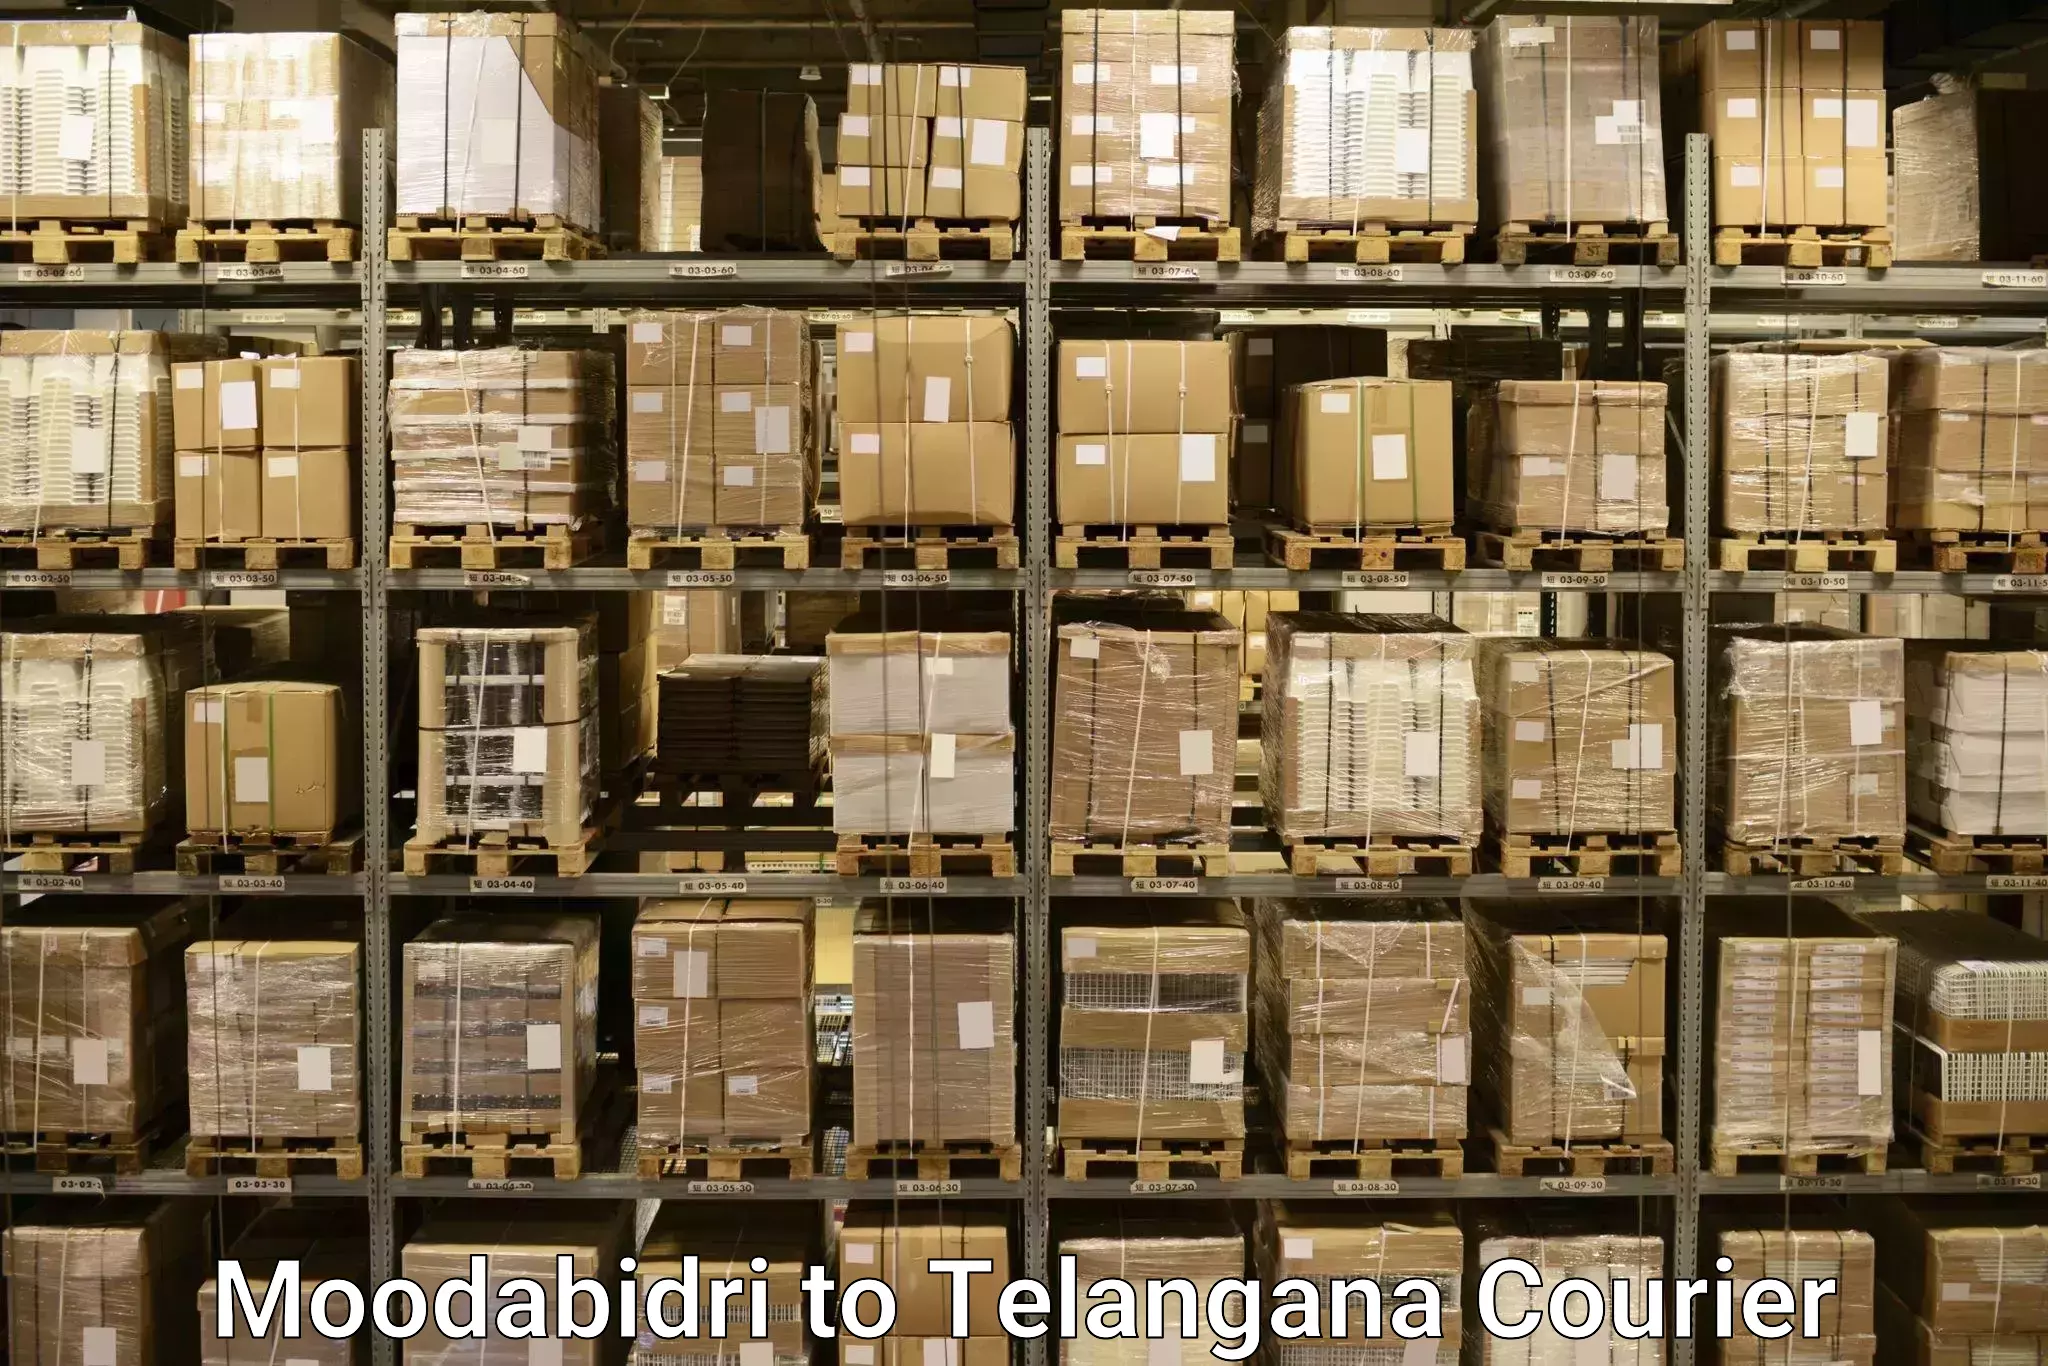 Baggage delivery estimate Moodabidri to Tadoor